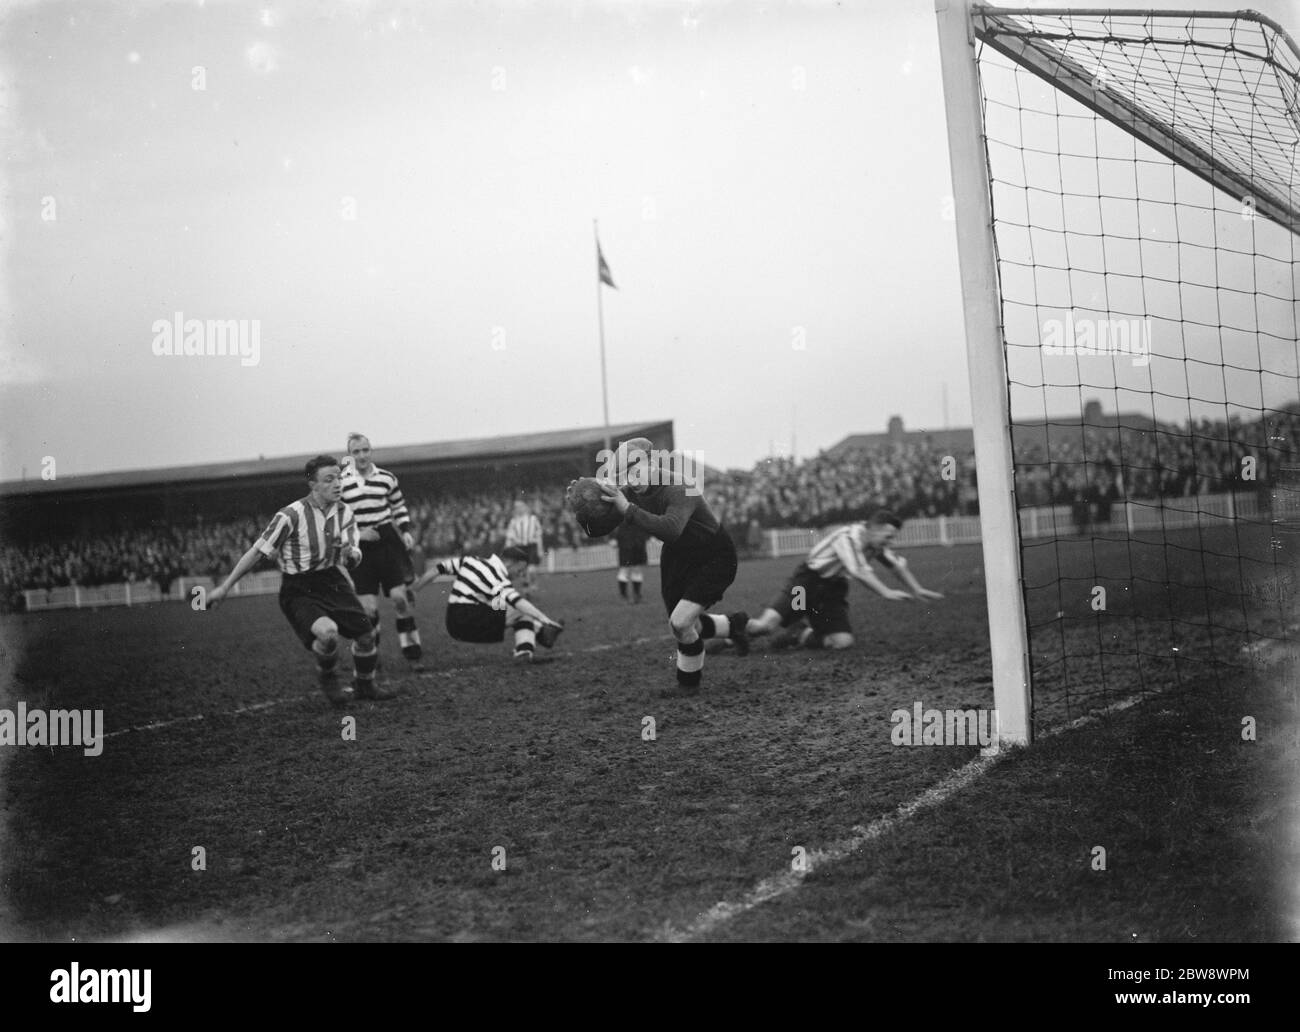 Dartford gegen Darlington Fußballspiel. Aktion vor dem Tor, macht der Torwart einen Save. 1937 Stockfoto